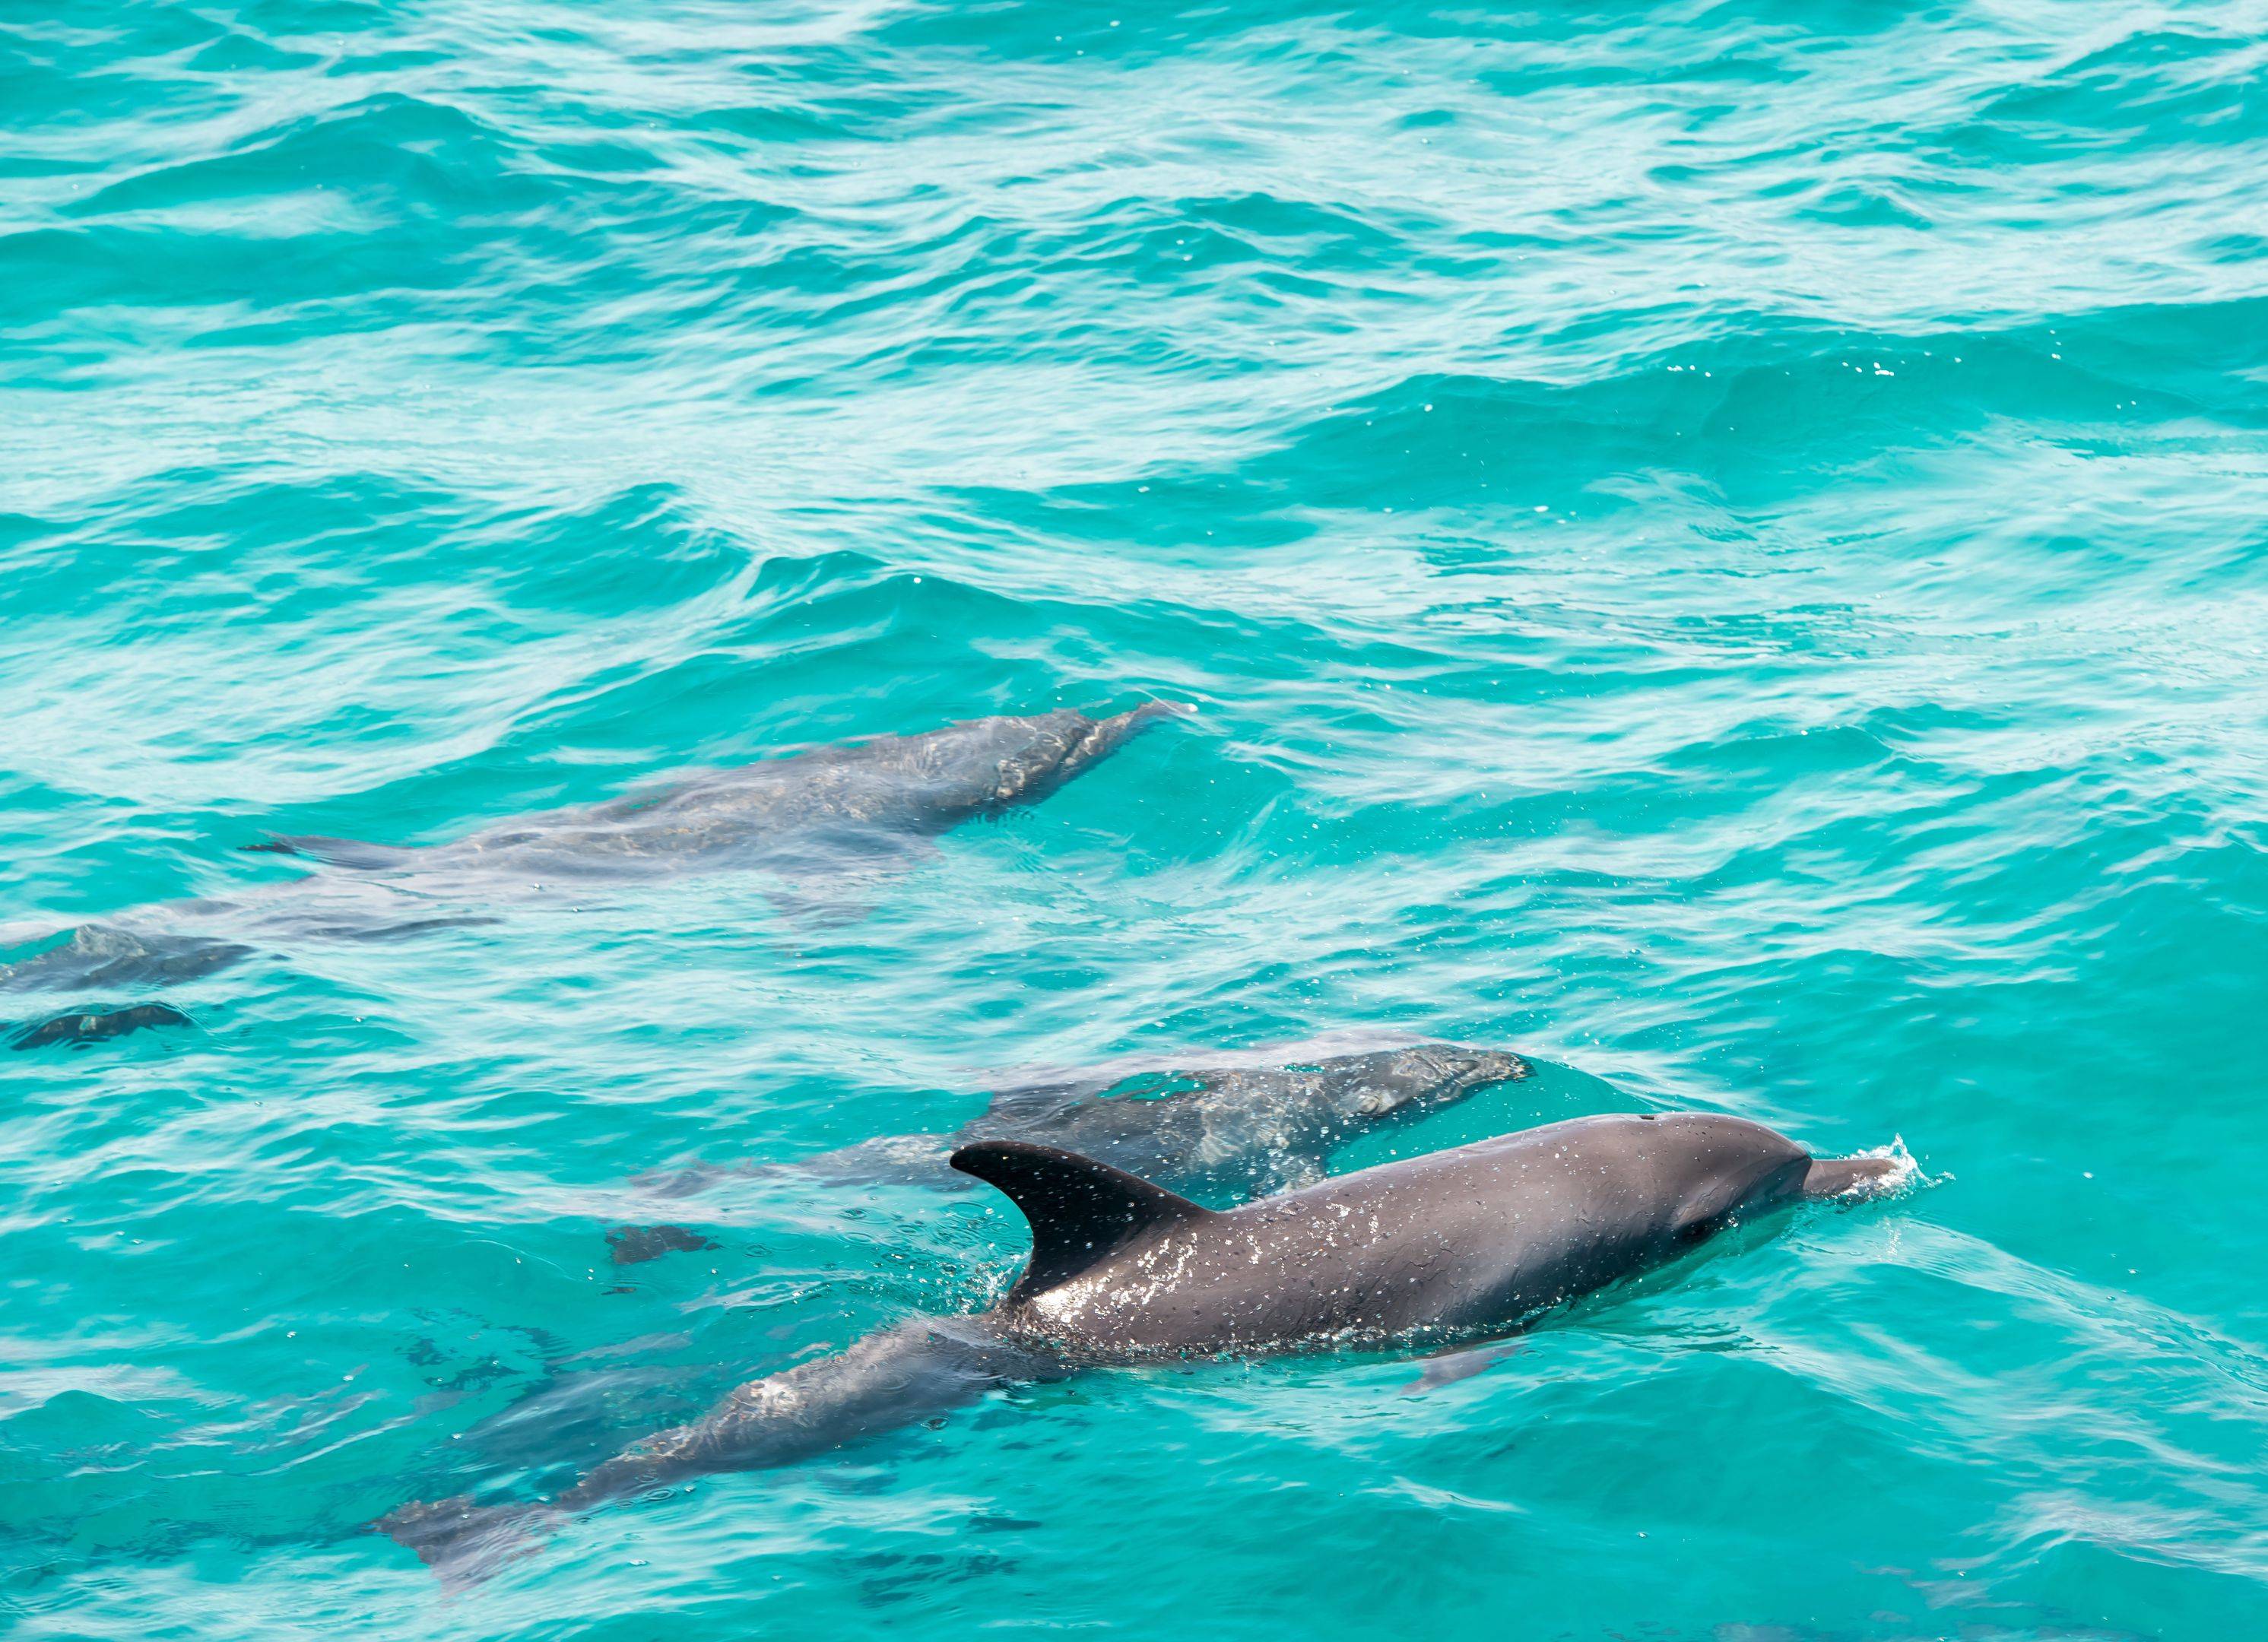 Découverte de Rovinj et observation des dauphins